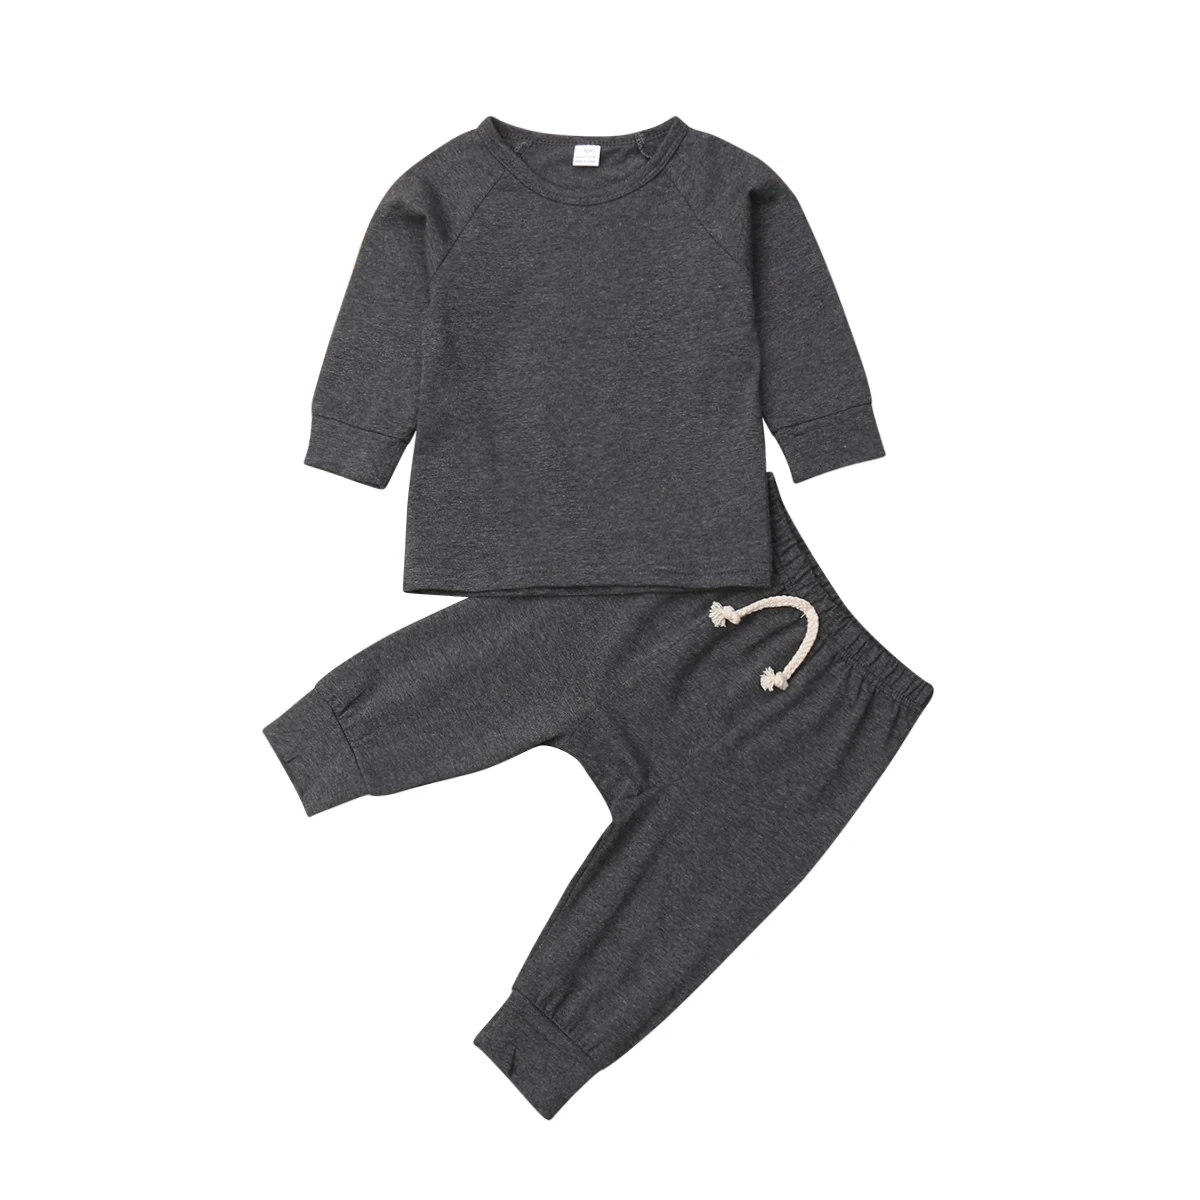 6 цветов; Мягкие хлопковые пижамы для маленьких мальчиков и девочек; комплект одежды для сна; одежда для сна; Одежда для новорожденных; детская одежда - Цвет: Темно-серый